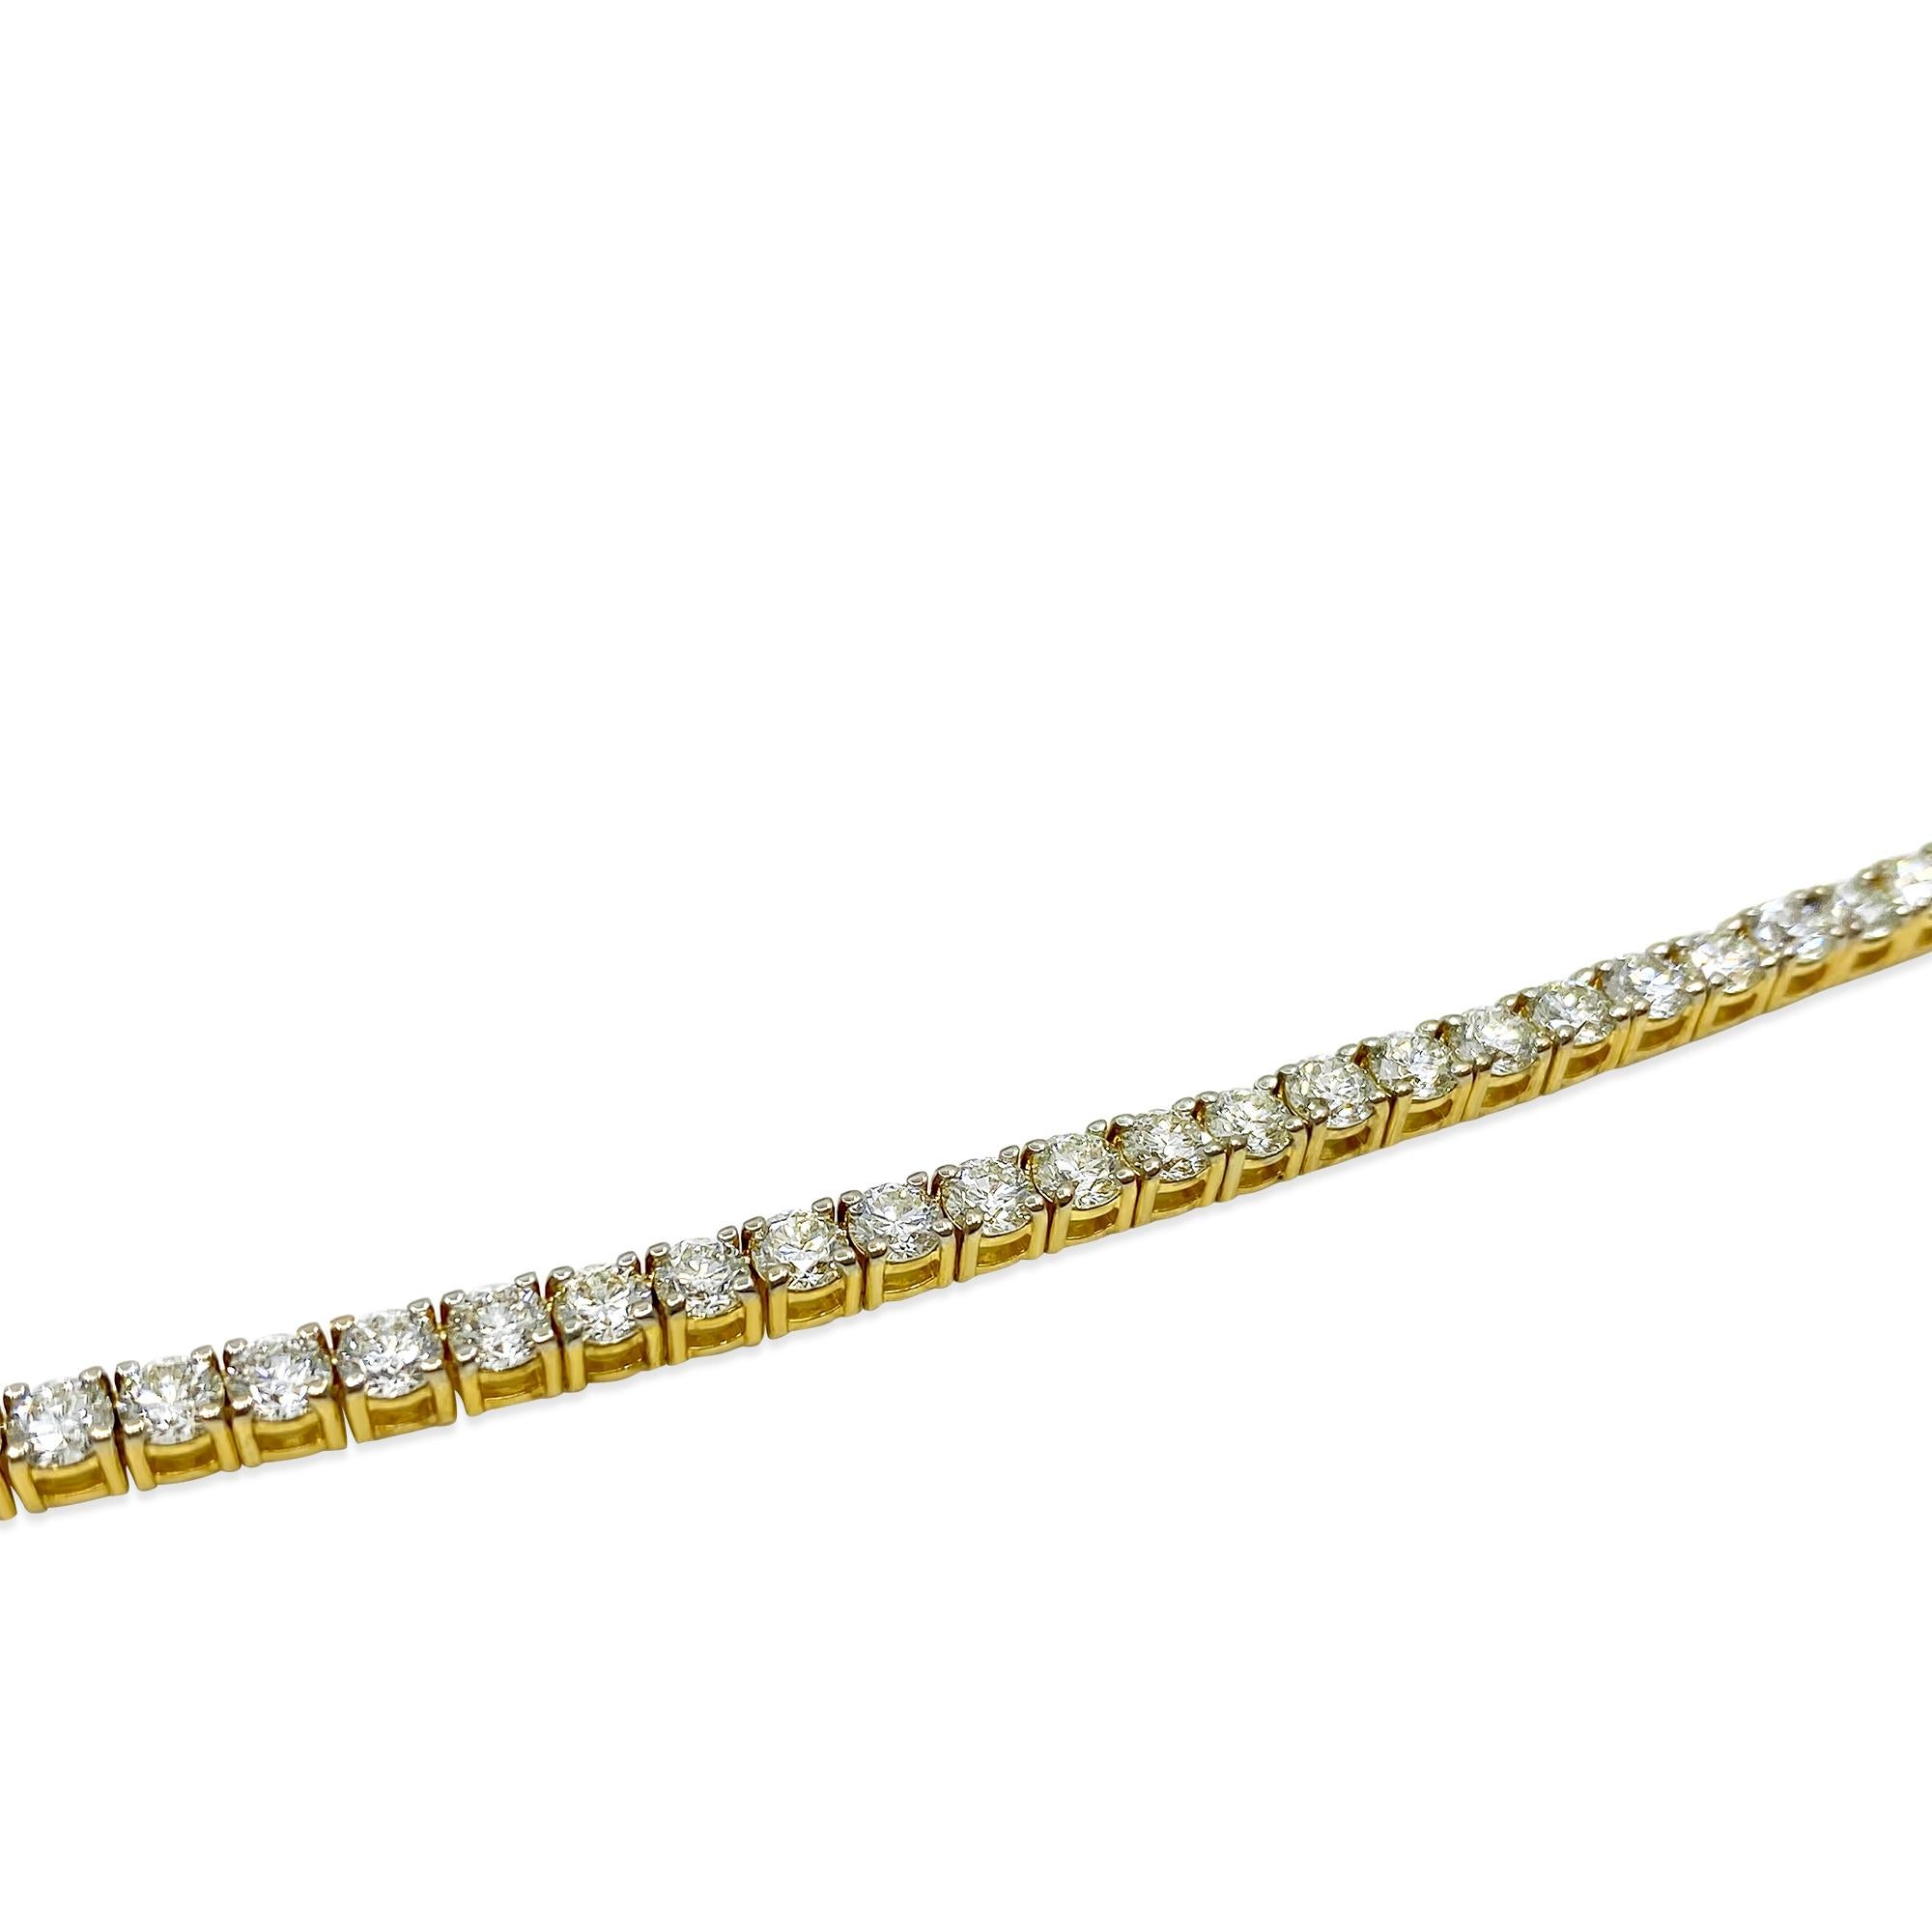 Fabriqué en or jaune 14 carats, ce collier exquis comporte 23 carats de diamants remarquables, d'une pureté très élevée à légèrement incluse (VVS-VS) et d'une couleur H. Le collier, d'une longueur de 24 pouces, met en valeur des diamants ronds de